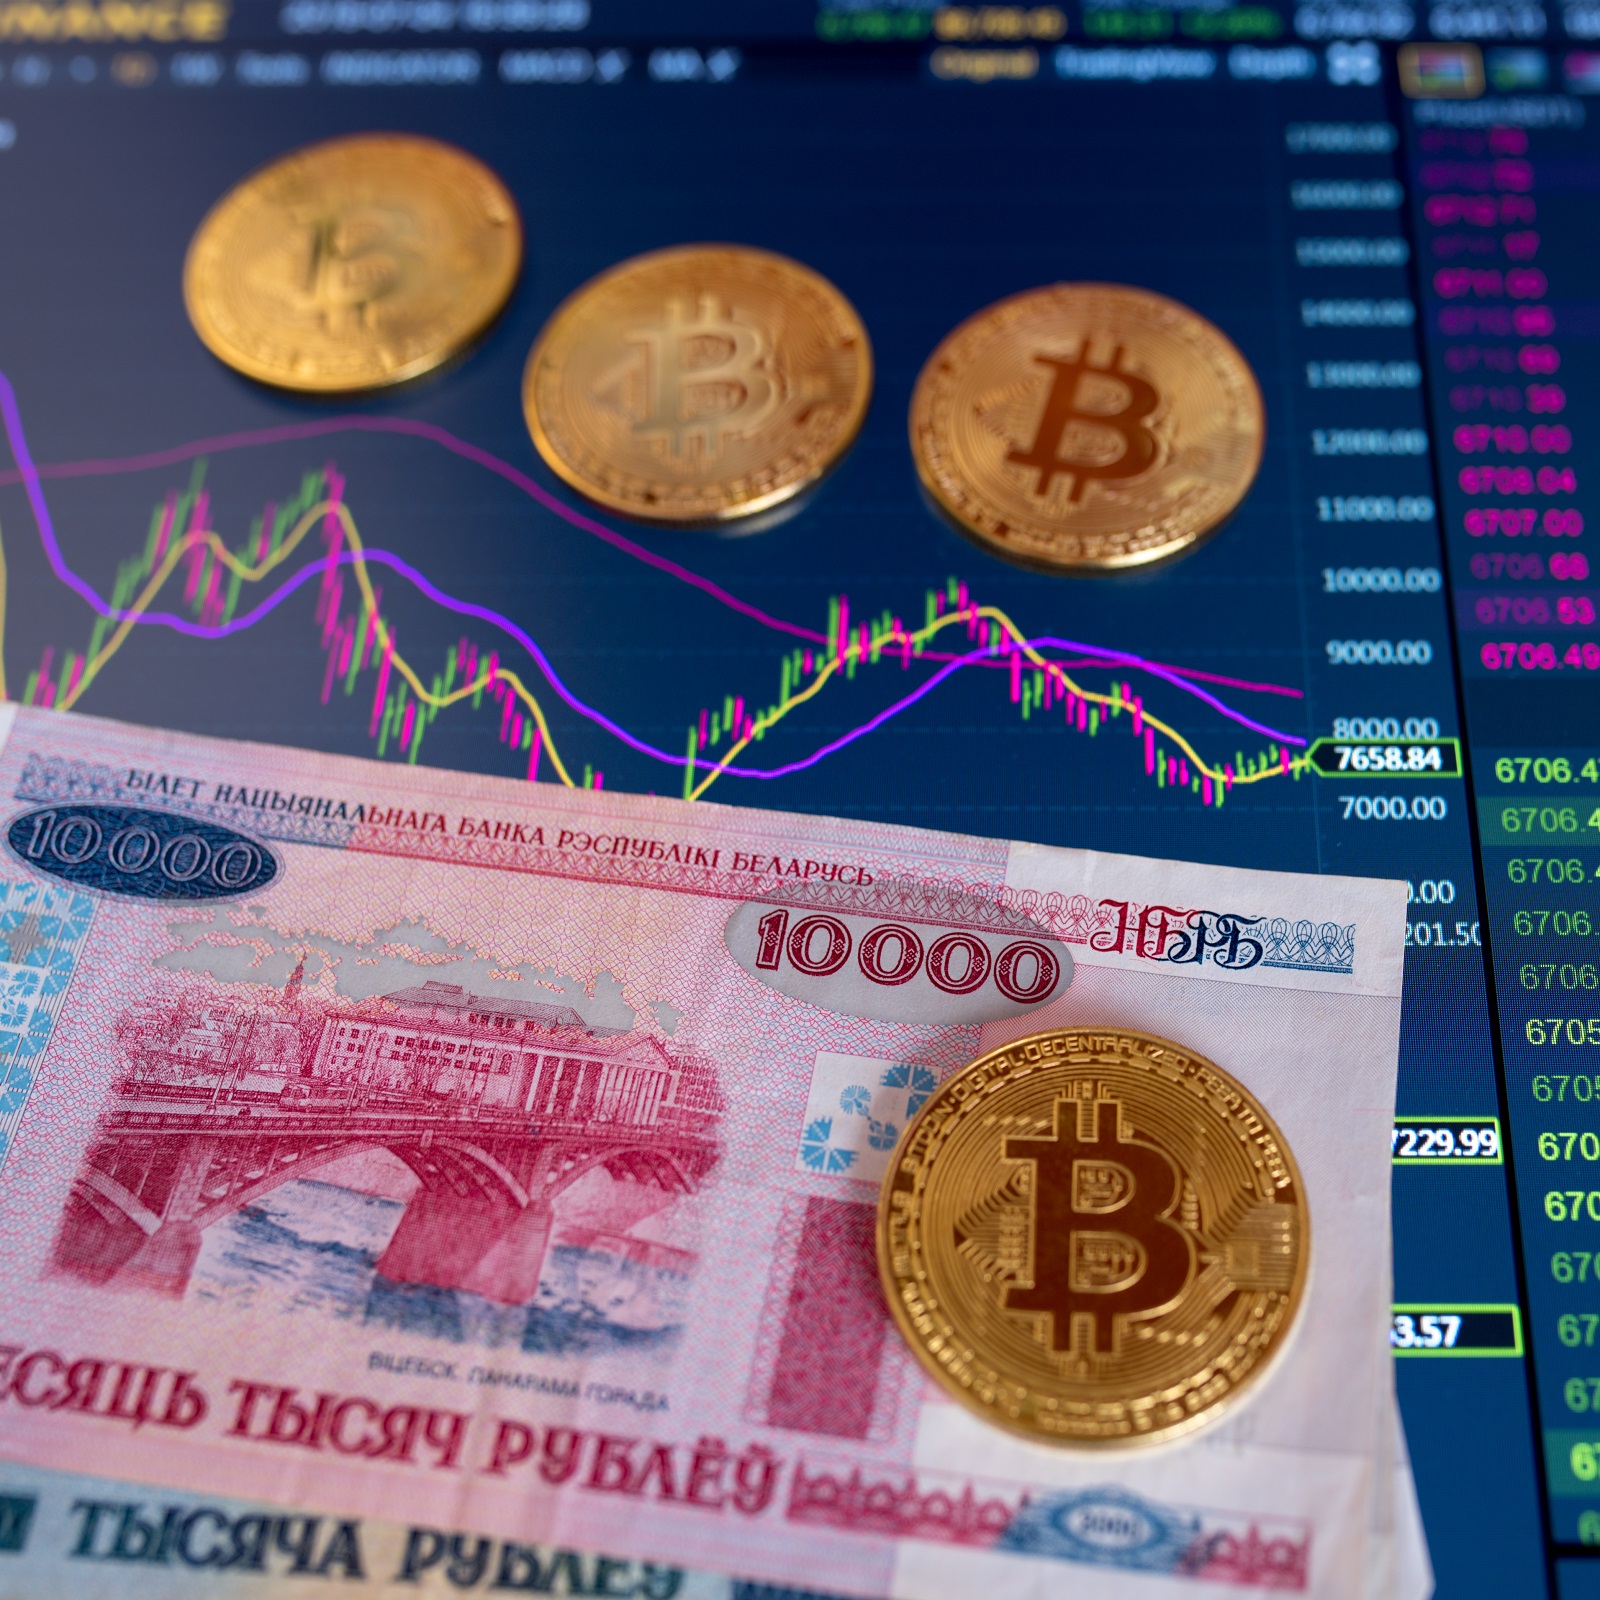 Обмен биткоин в москве белорусские рубли обмен валют на достоевской